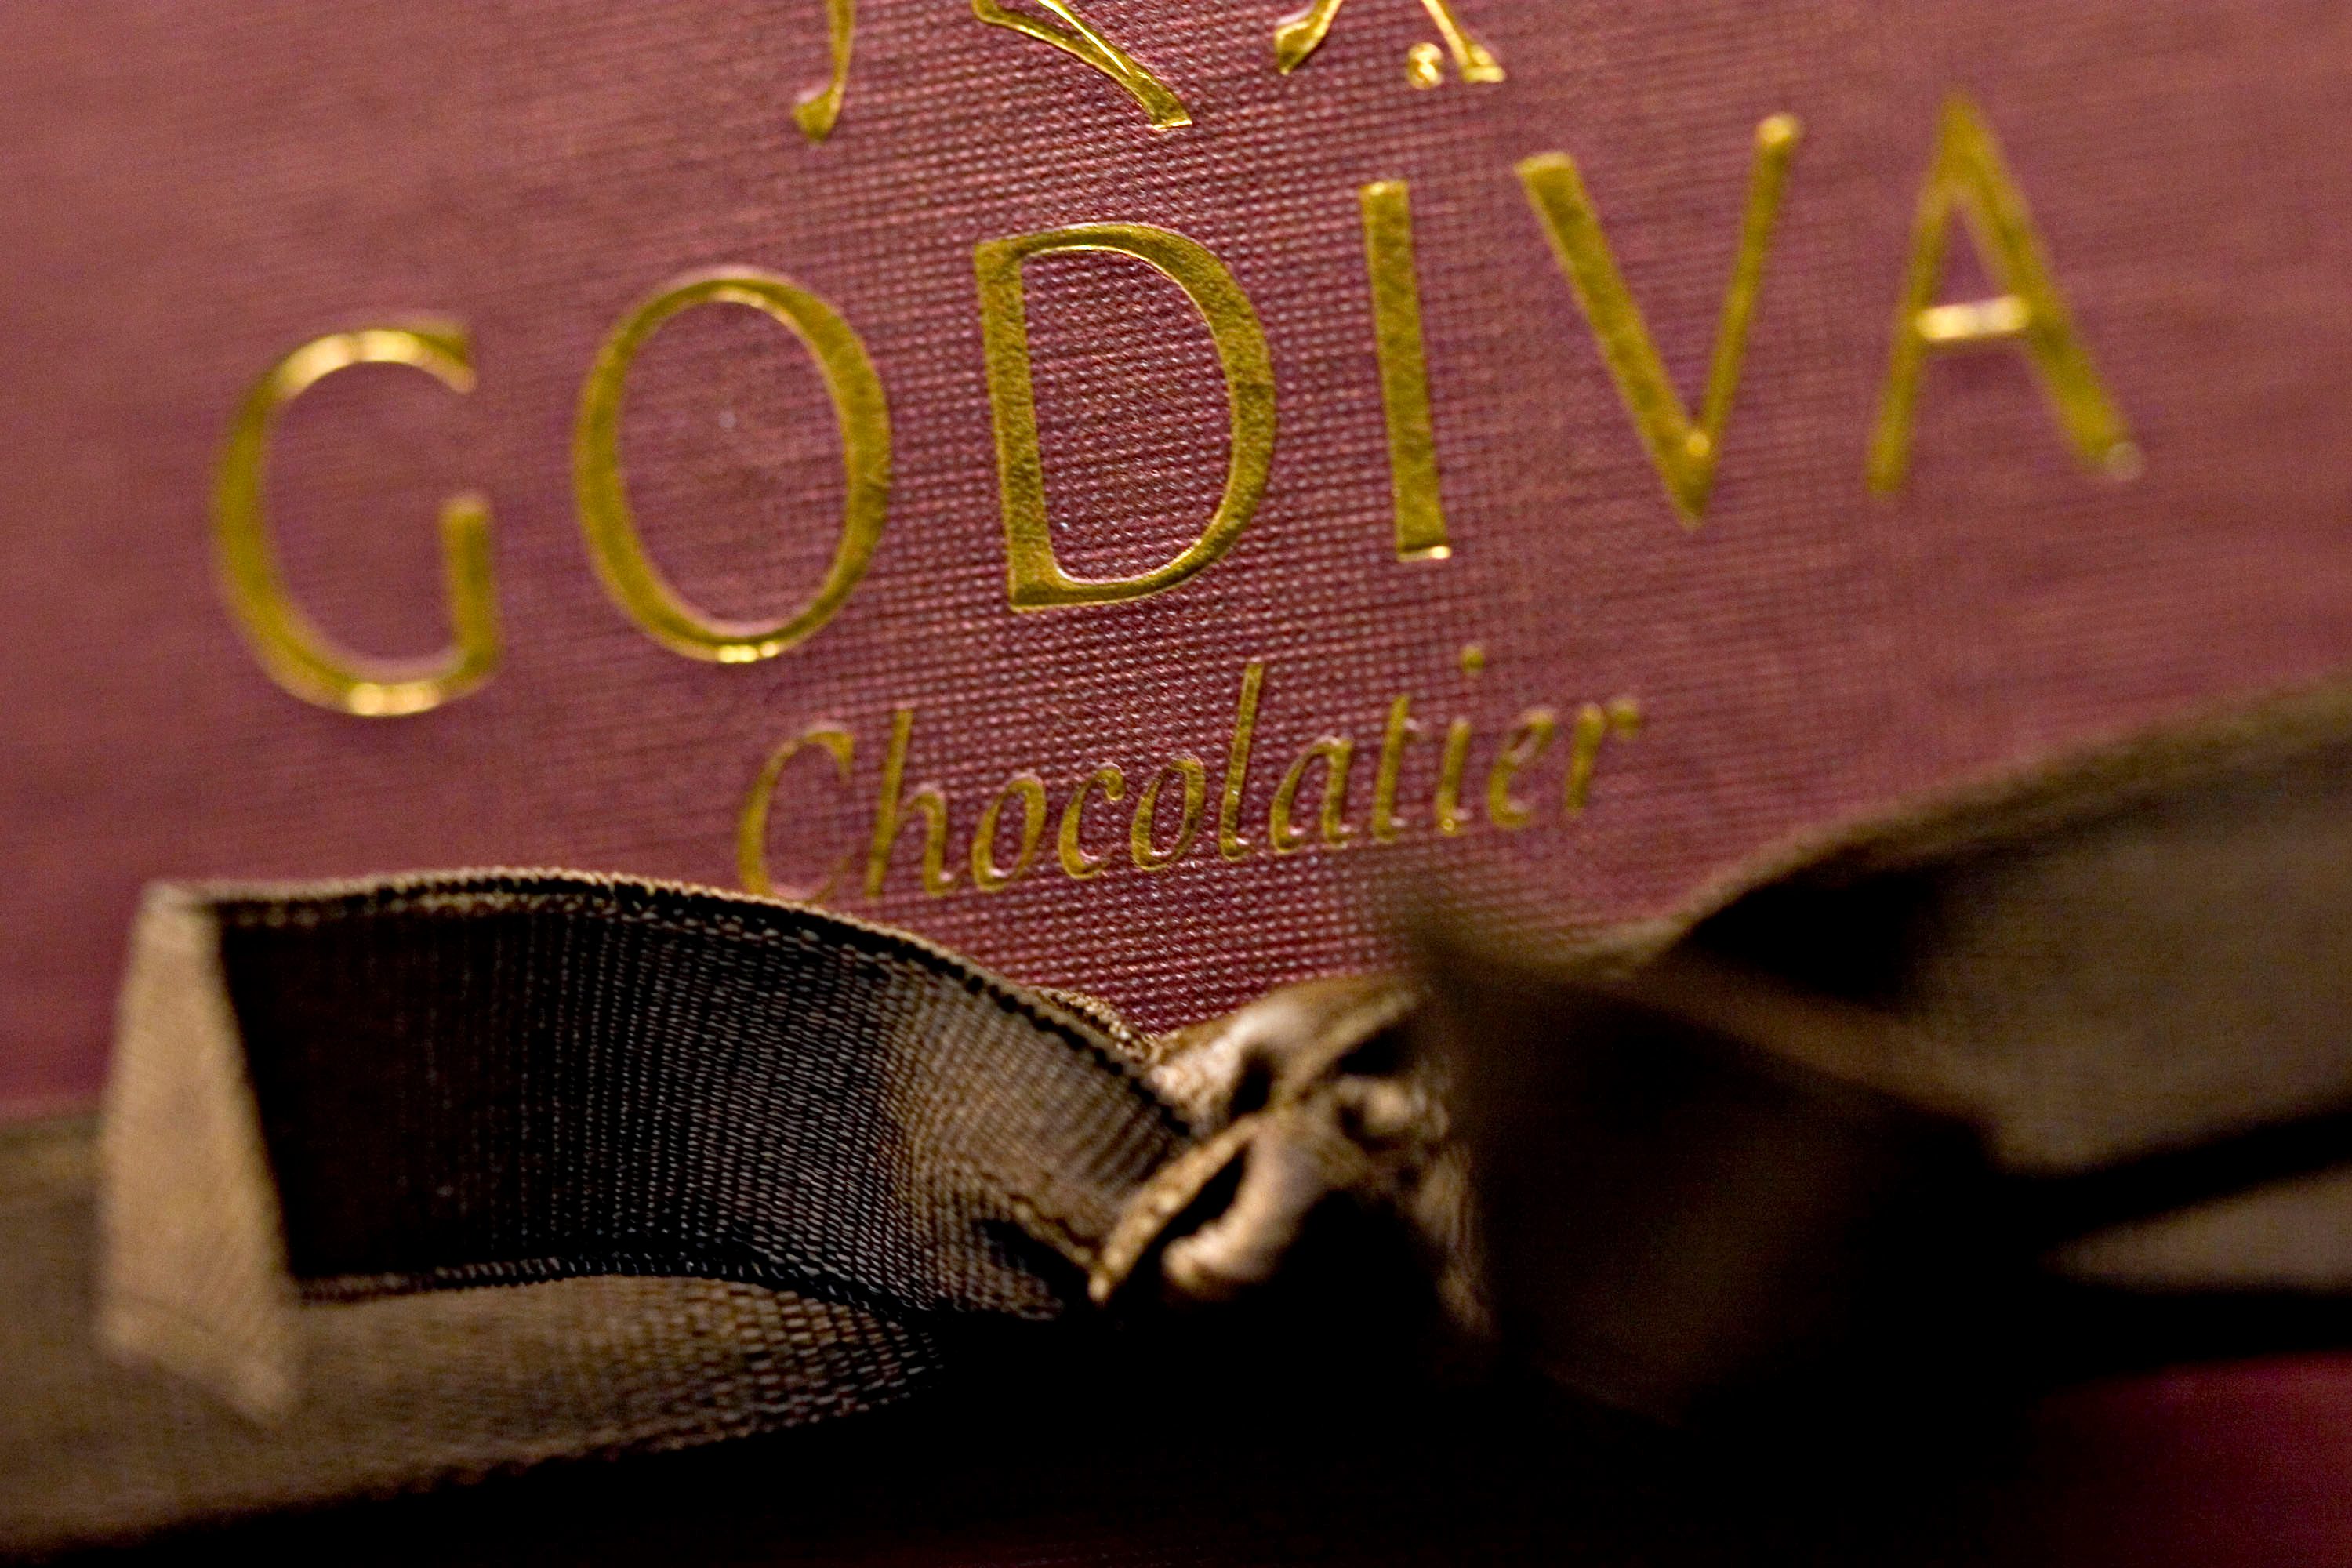 Turkish owner of Godiva chocolate Yildiz exploring sale of Japanese business